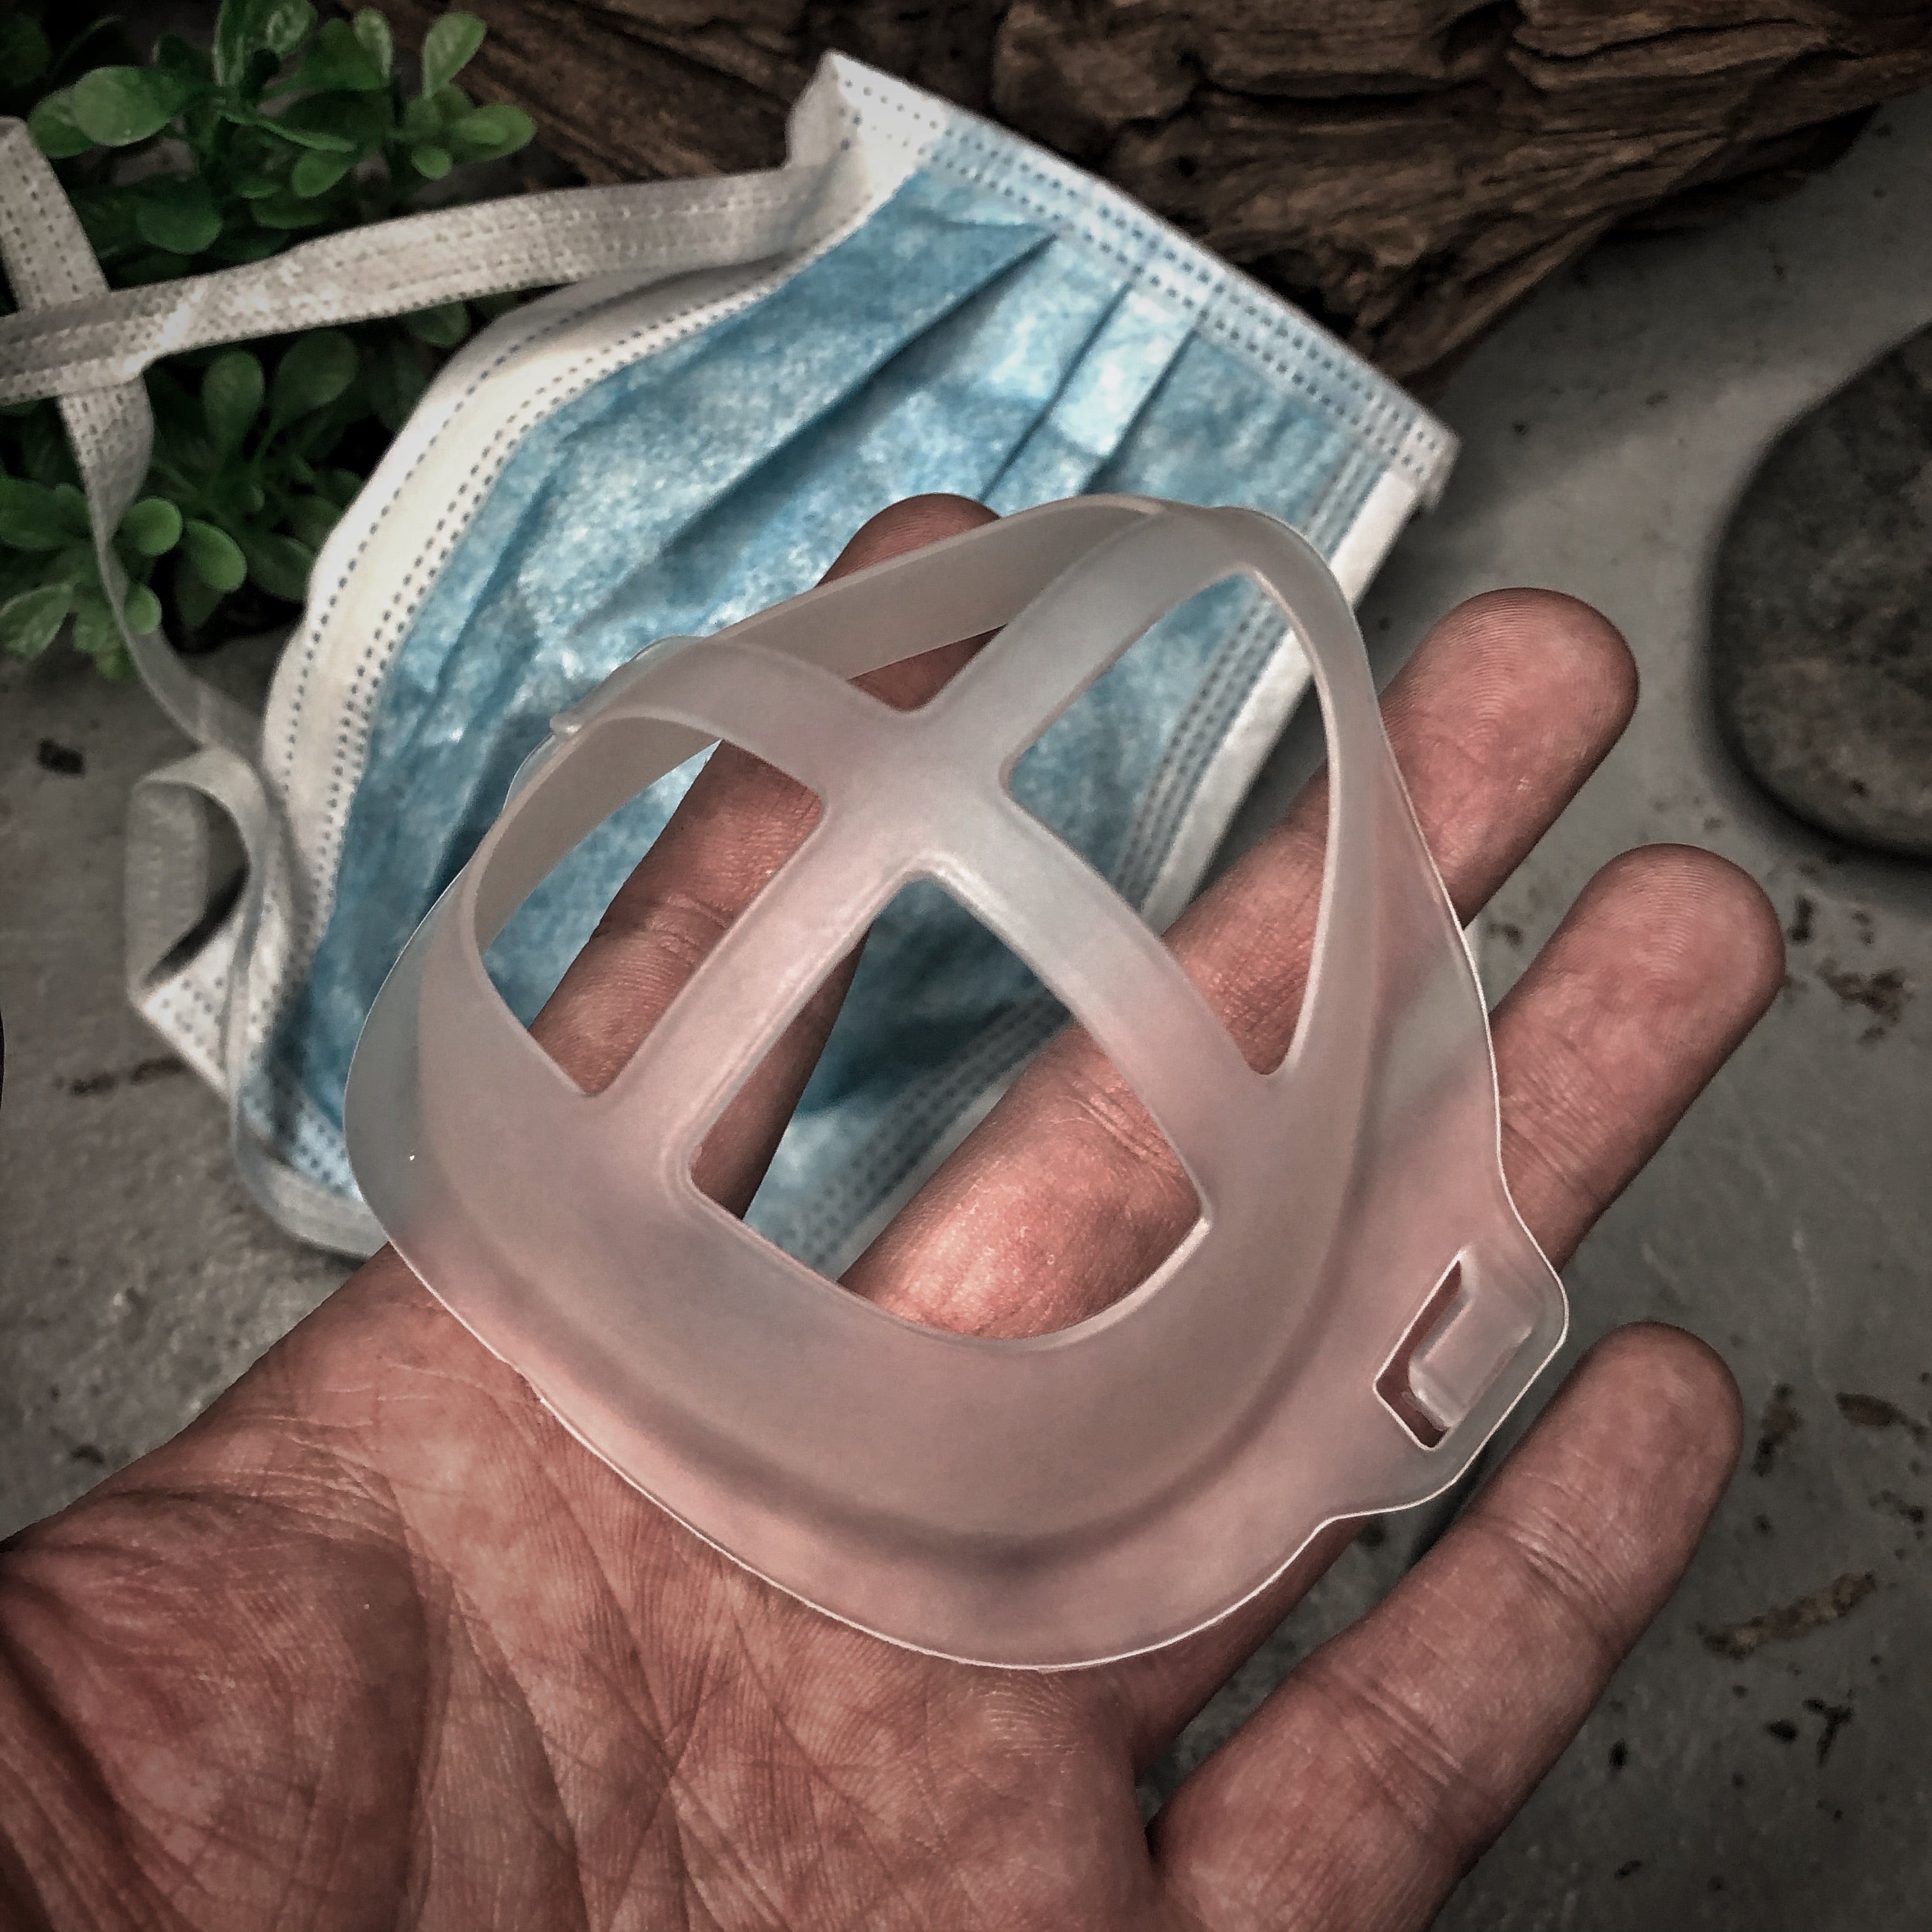 Gasket Spacer for Surgical Masks